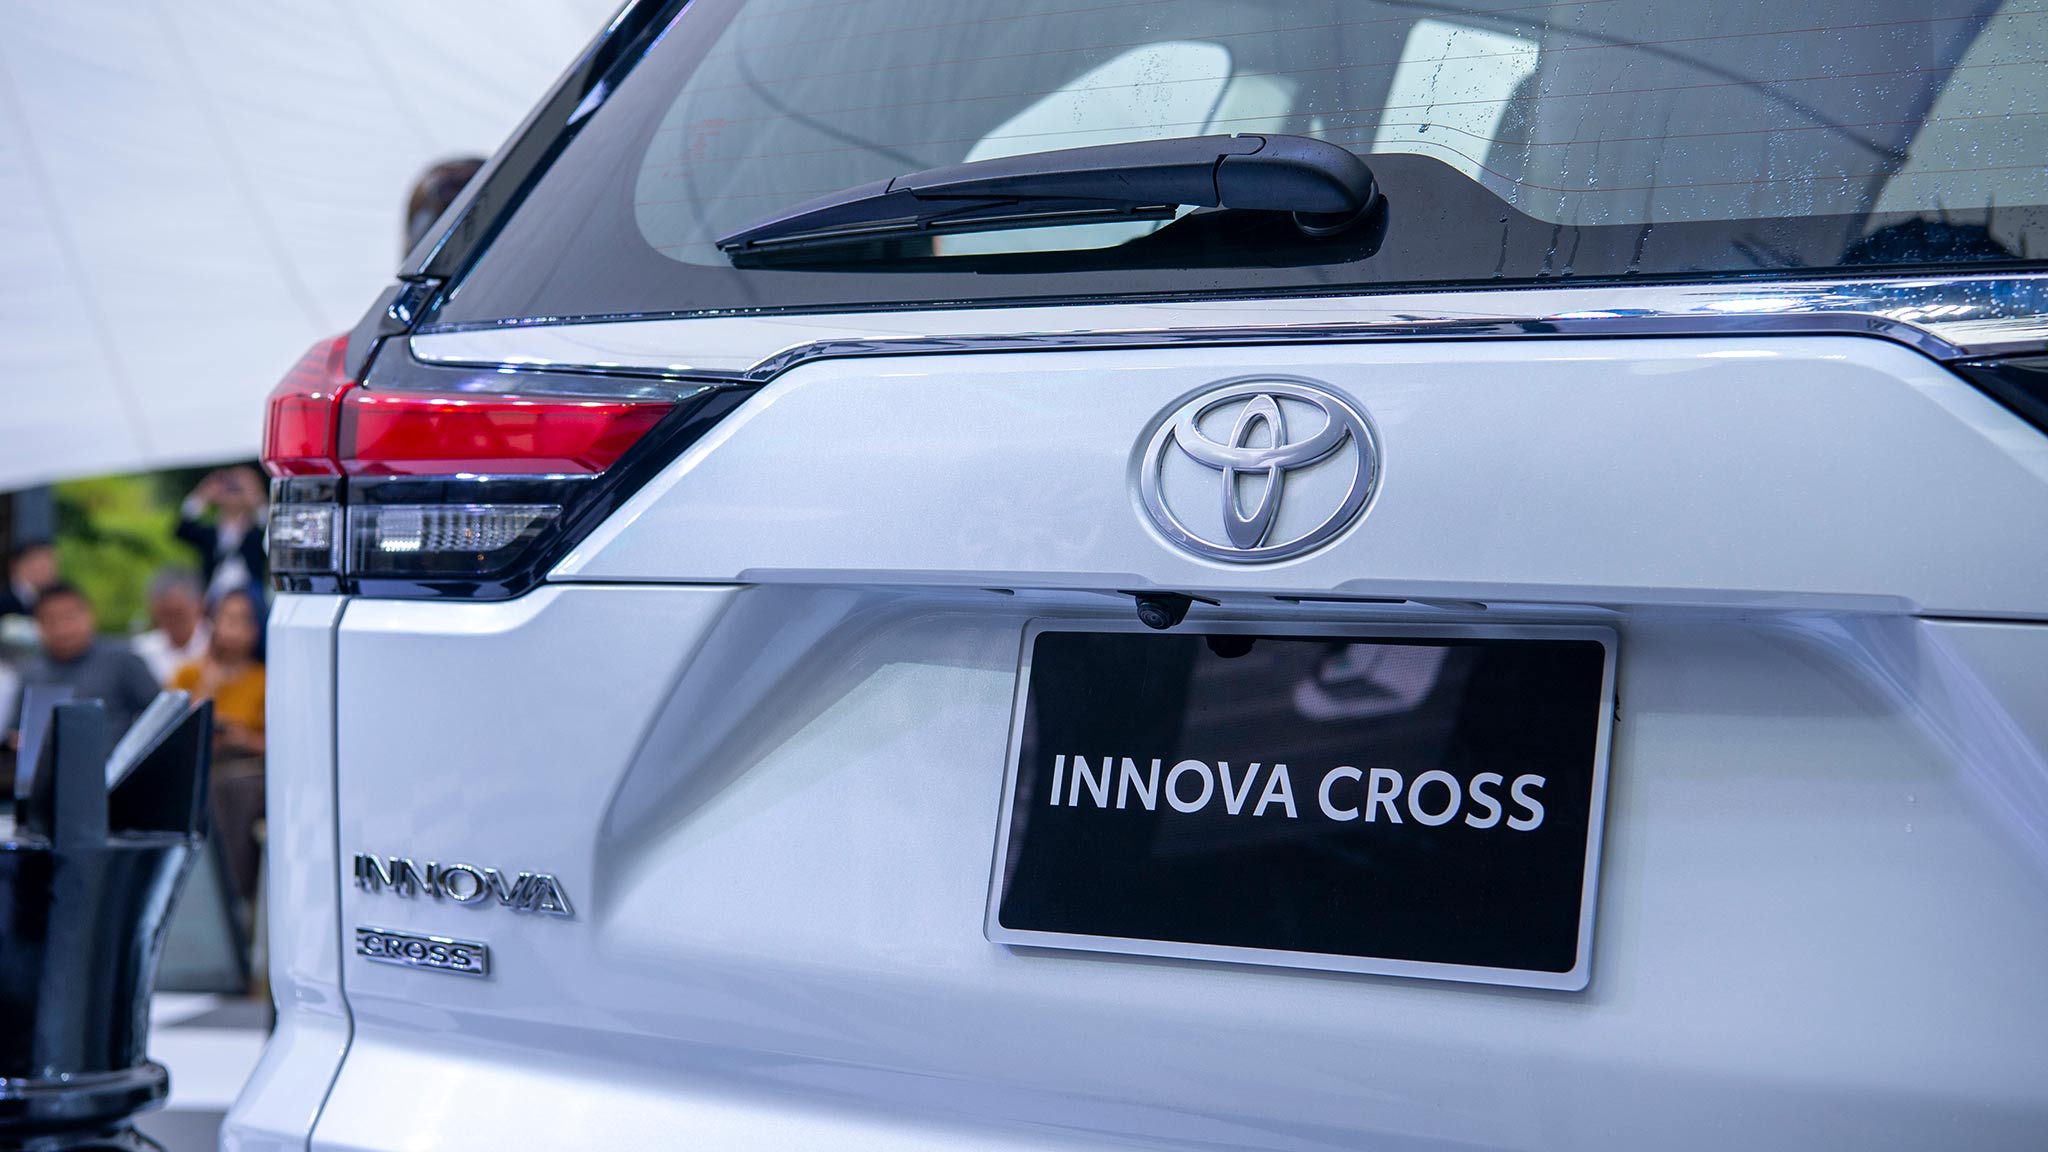 Cận cảnh Toyota Innova Cross vừa ra mắt tại Việt Nam toyota-innova-cross-07.jpg